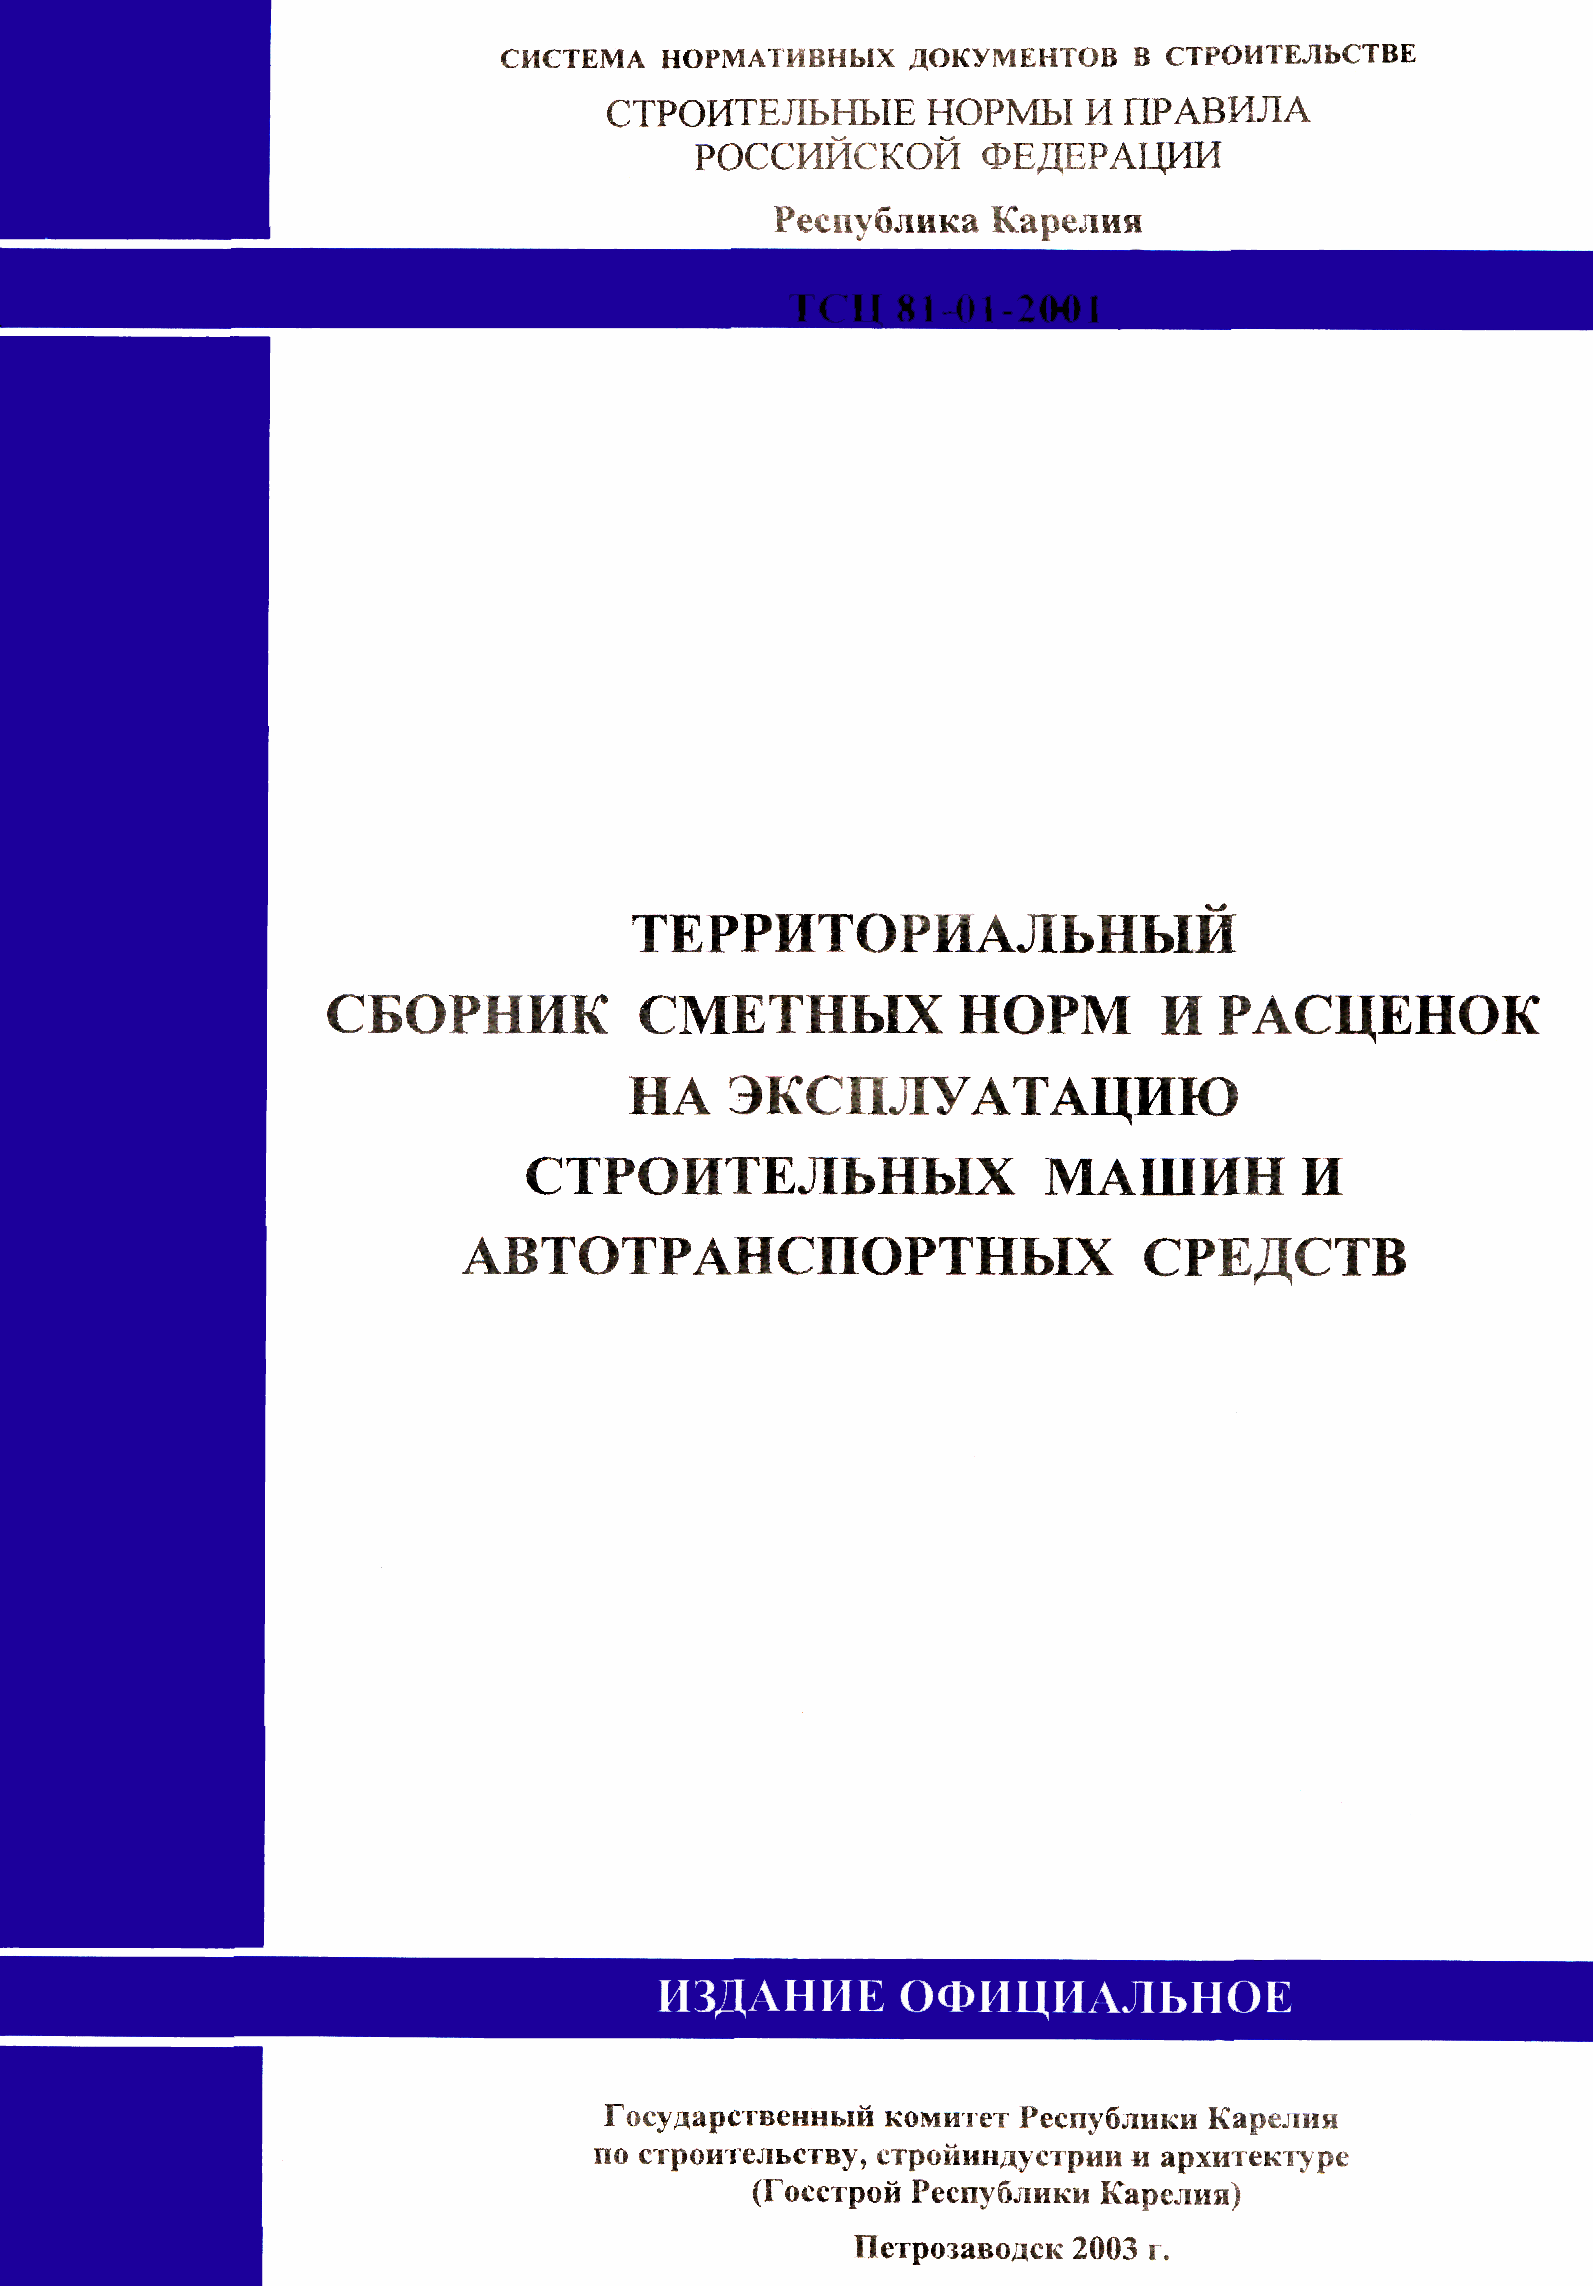 ТСЦ Республика Карелия 81-01-2001